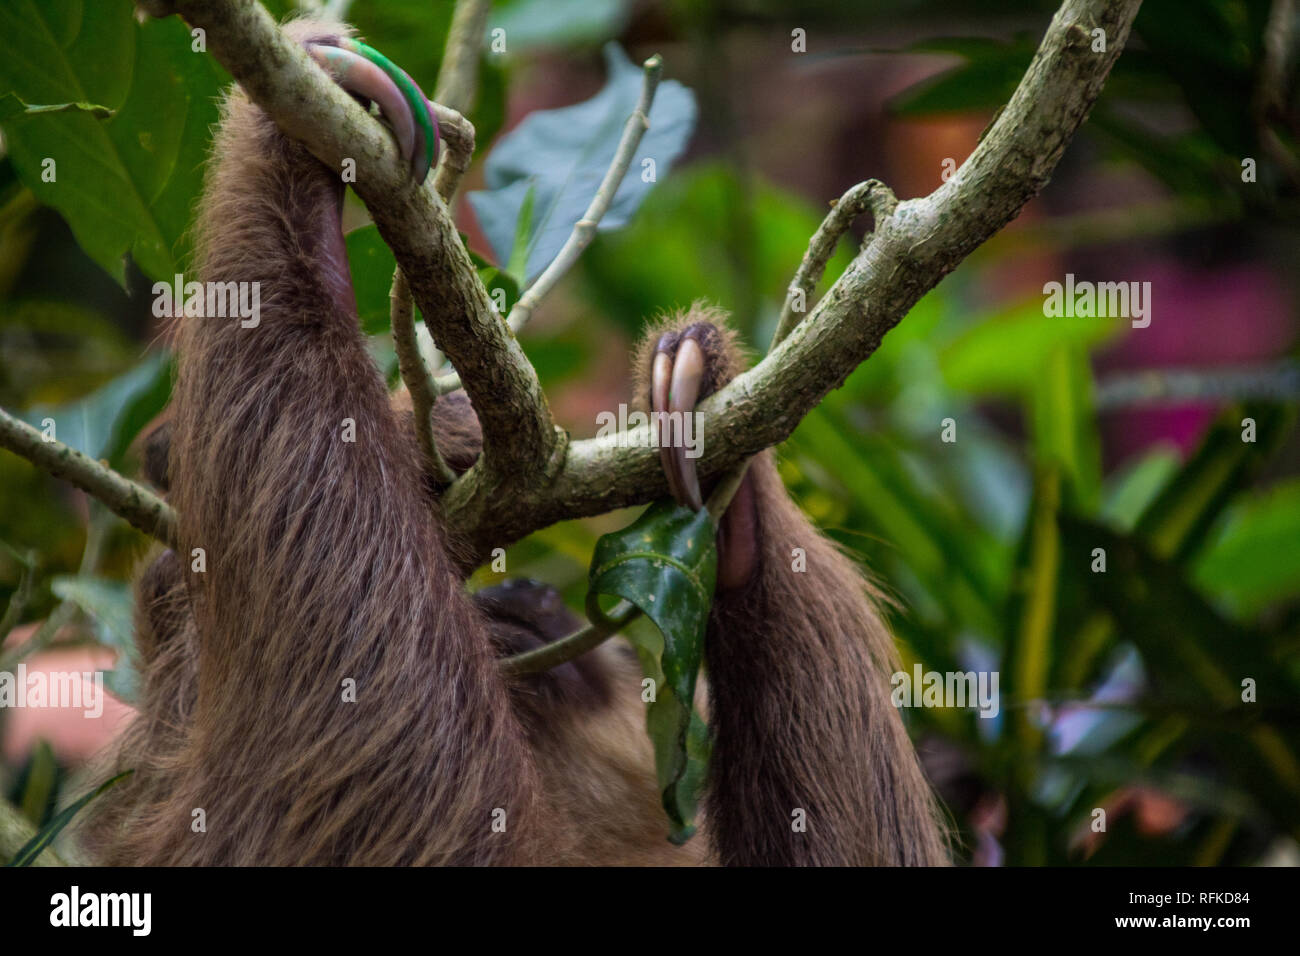 Une belle vue rapprochée des membres d'un paresseux accroché à un arbre. Les griffes de l'animal sont marqués pour l'identification Banque D'Images